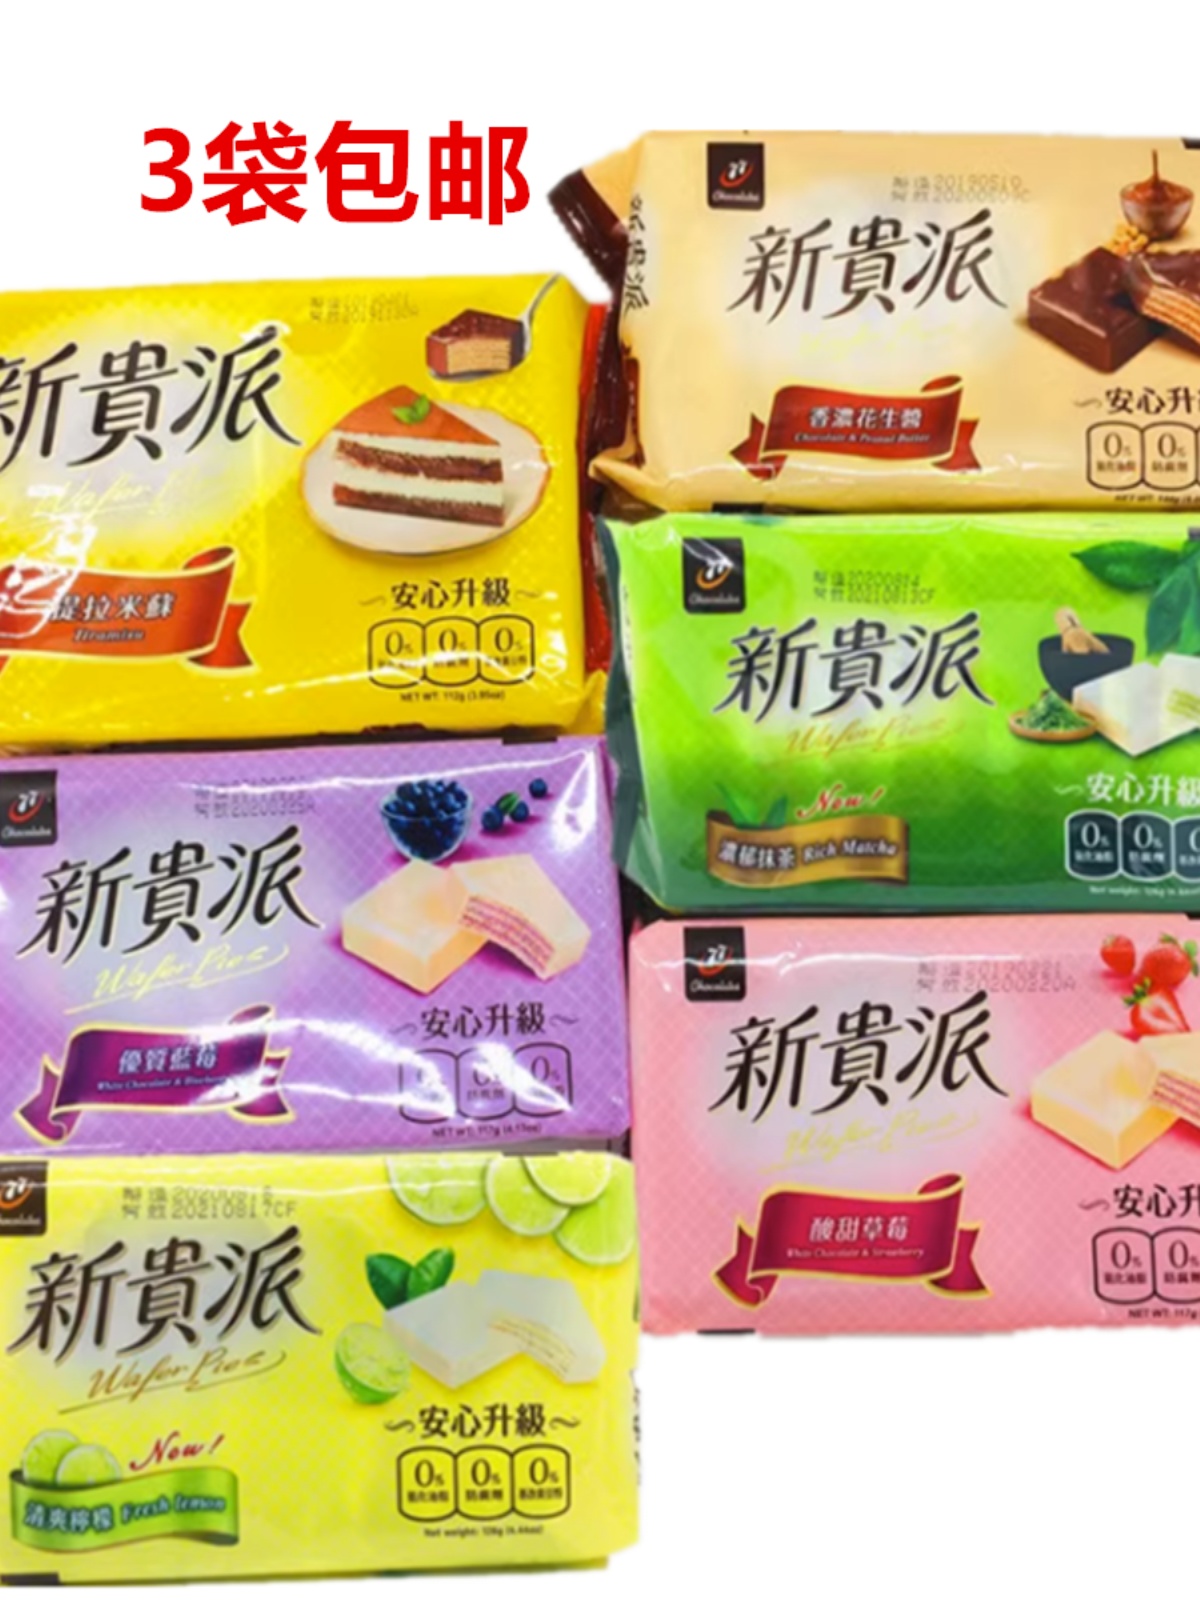 3包包邮台湾食品 77新贵派巧克力(花生) 香浓颗粒花生酱口味